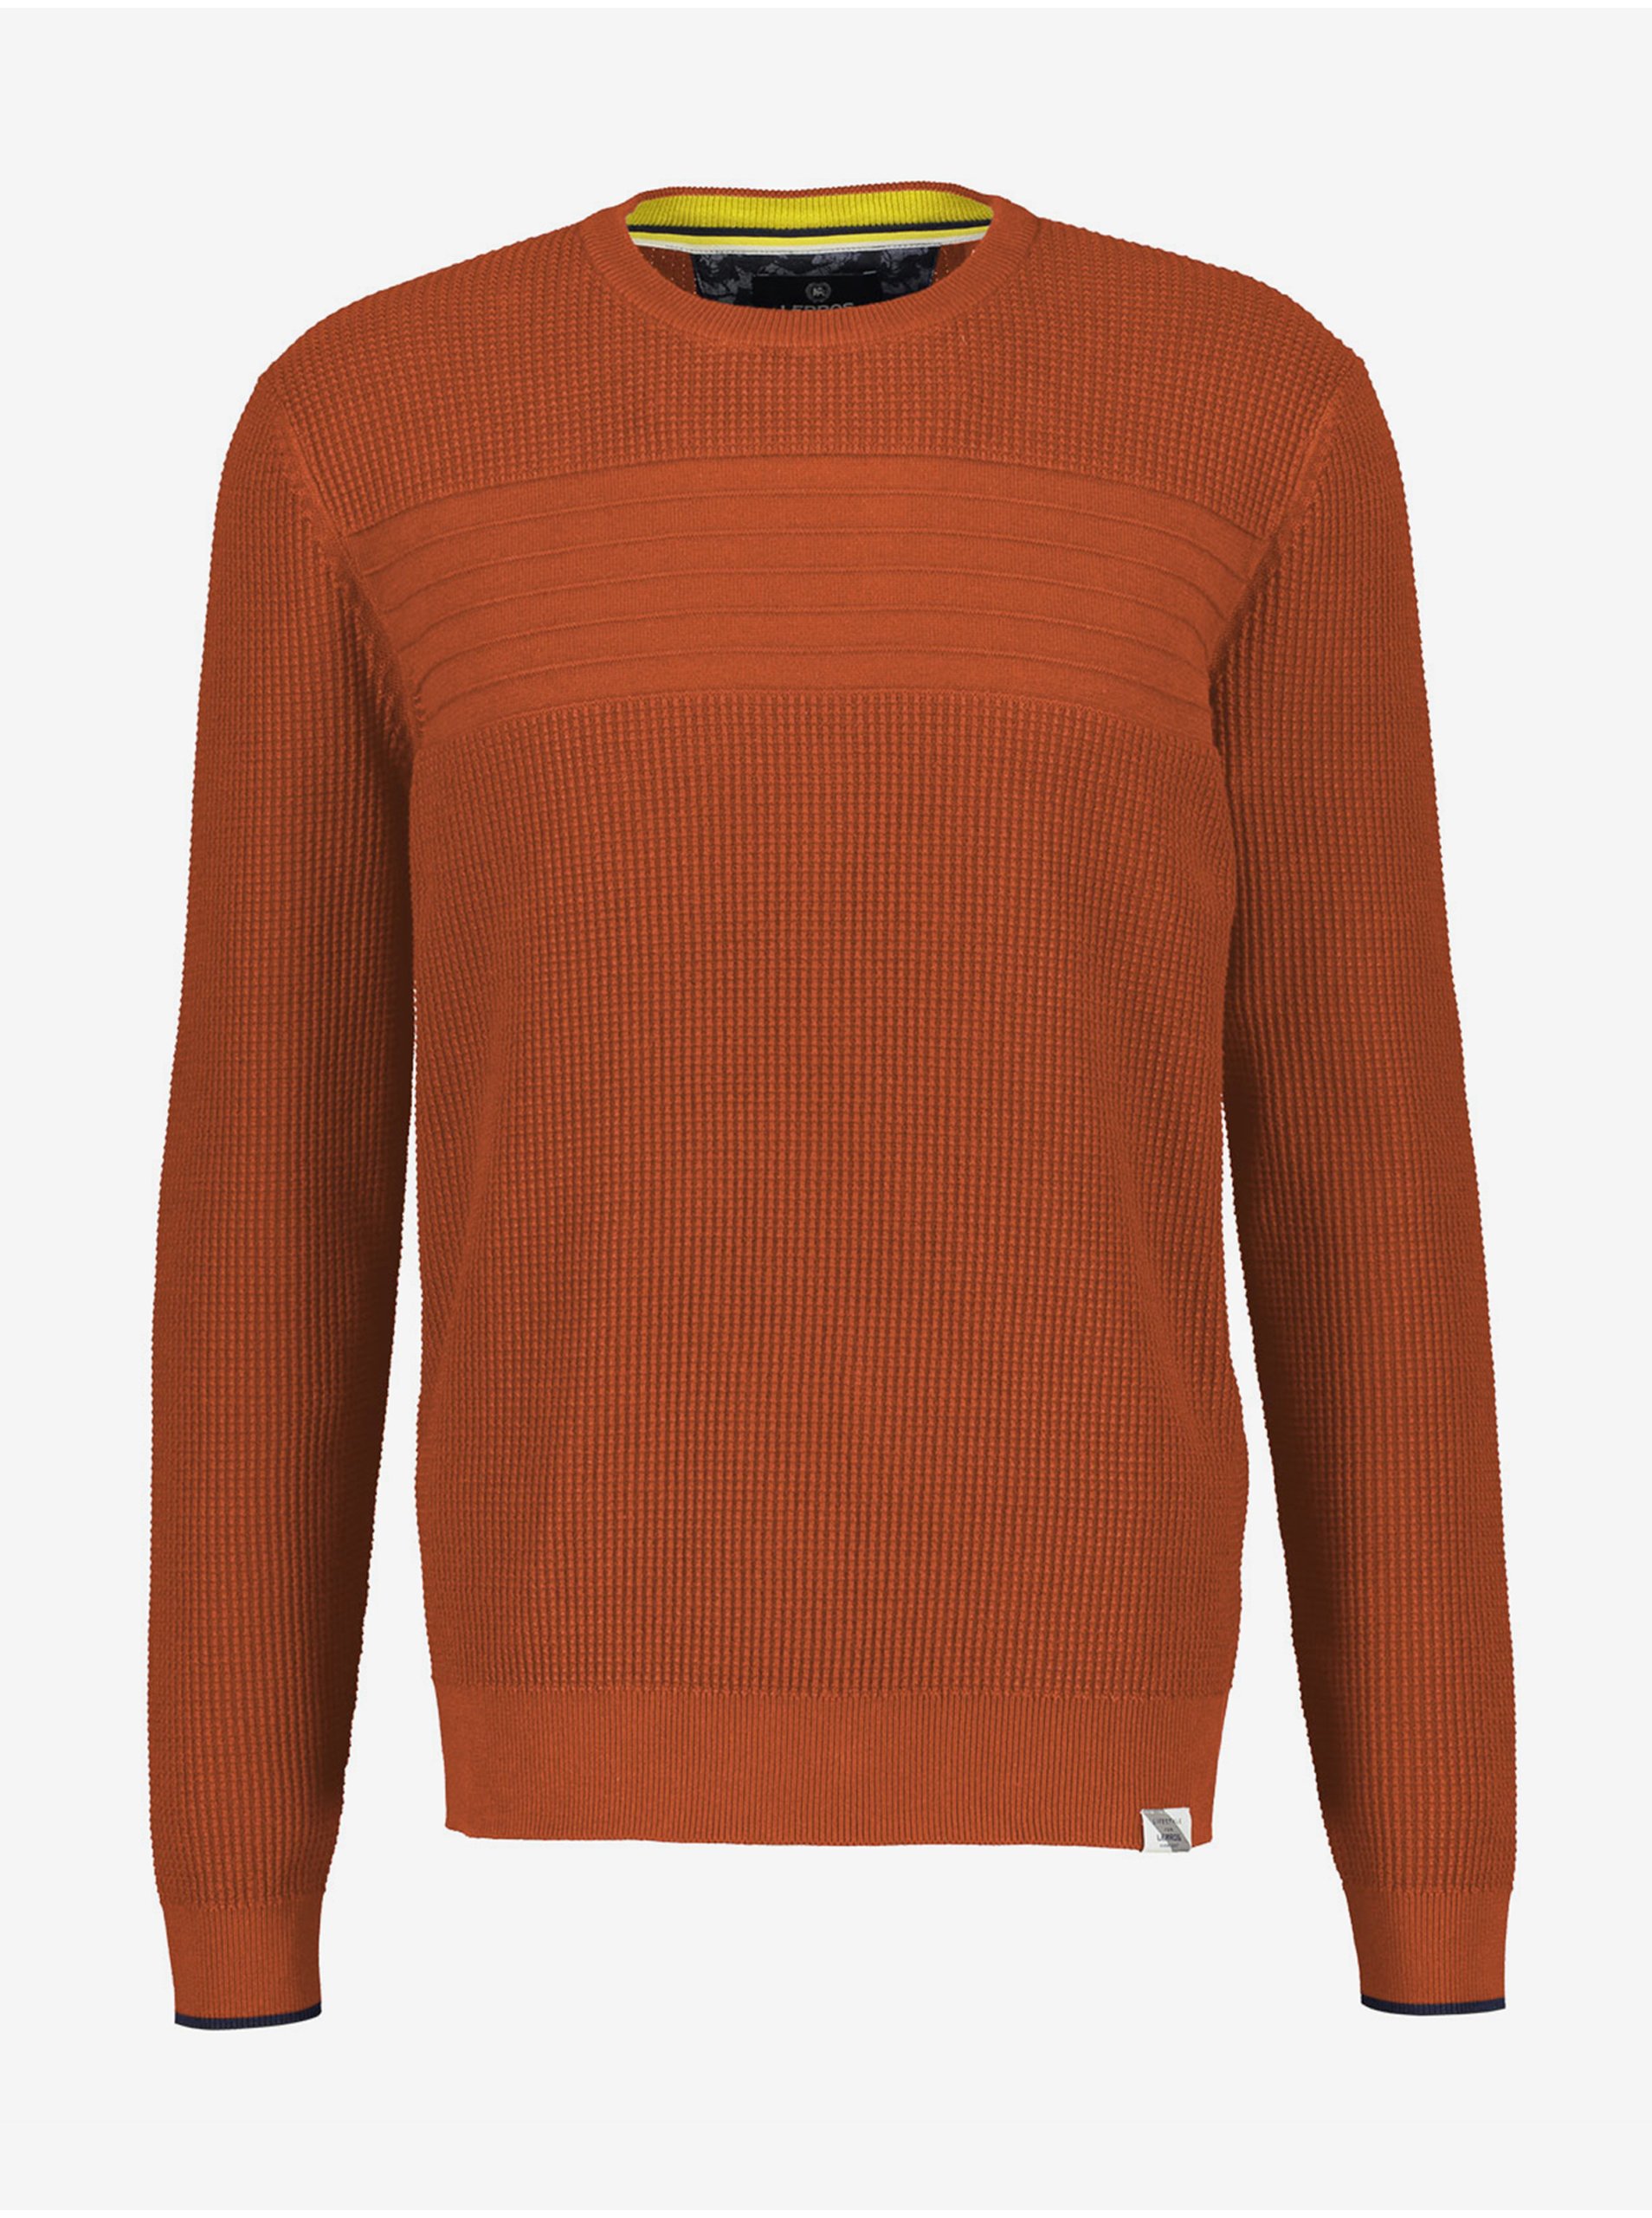 Orange men's sweater LERROS - Men